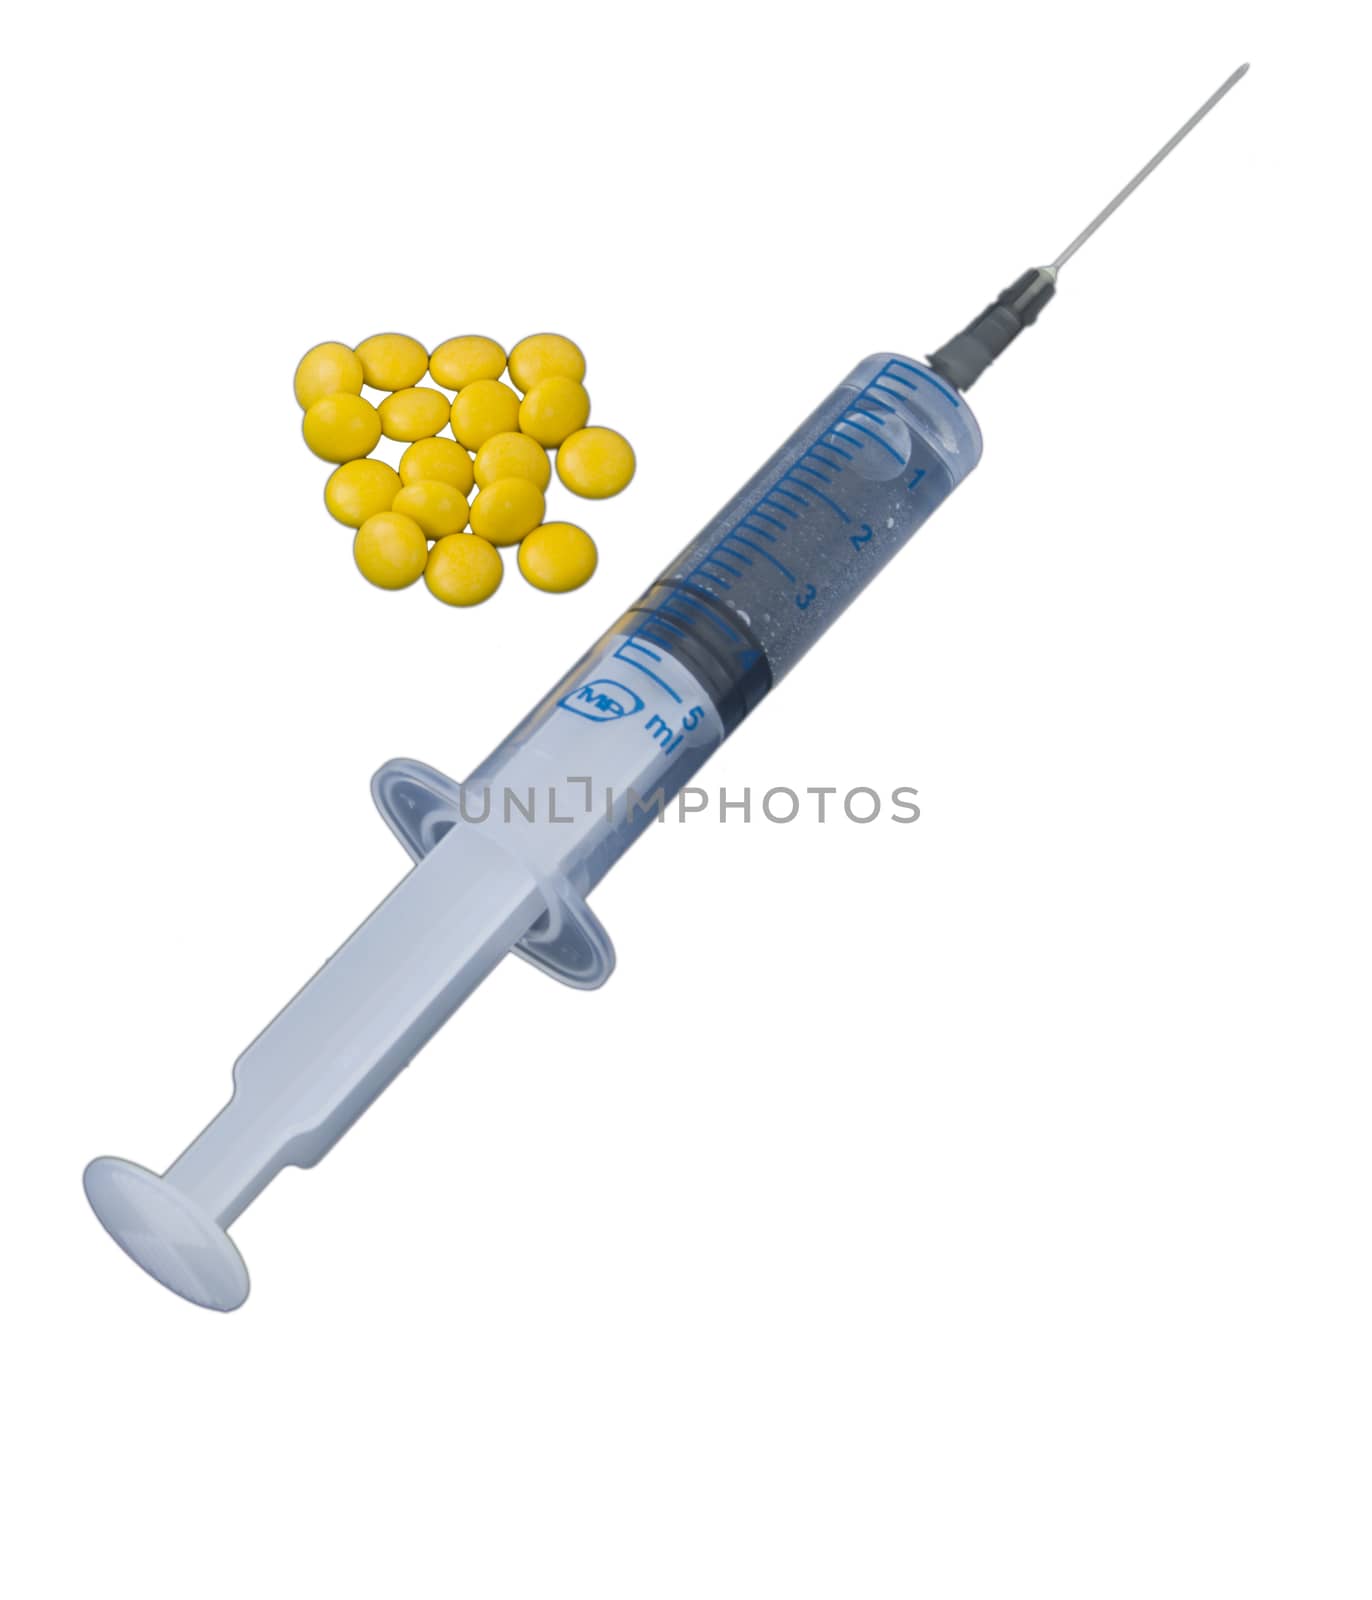 Medical syringe by serhii_lohvyniuk